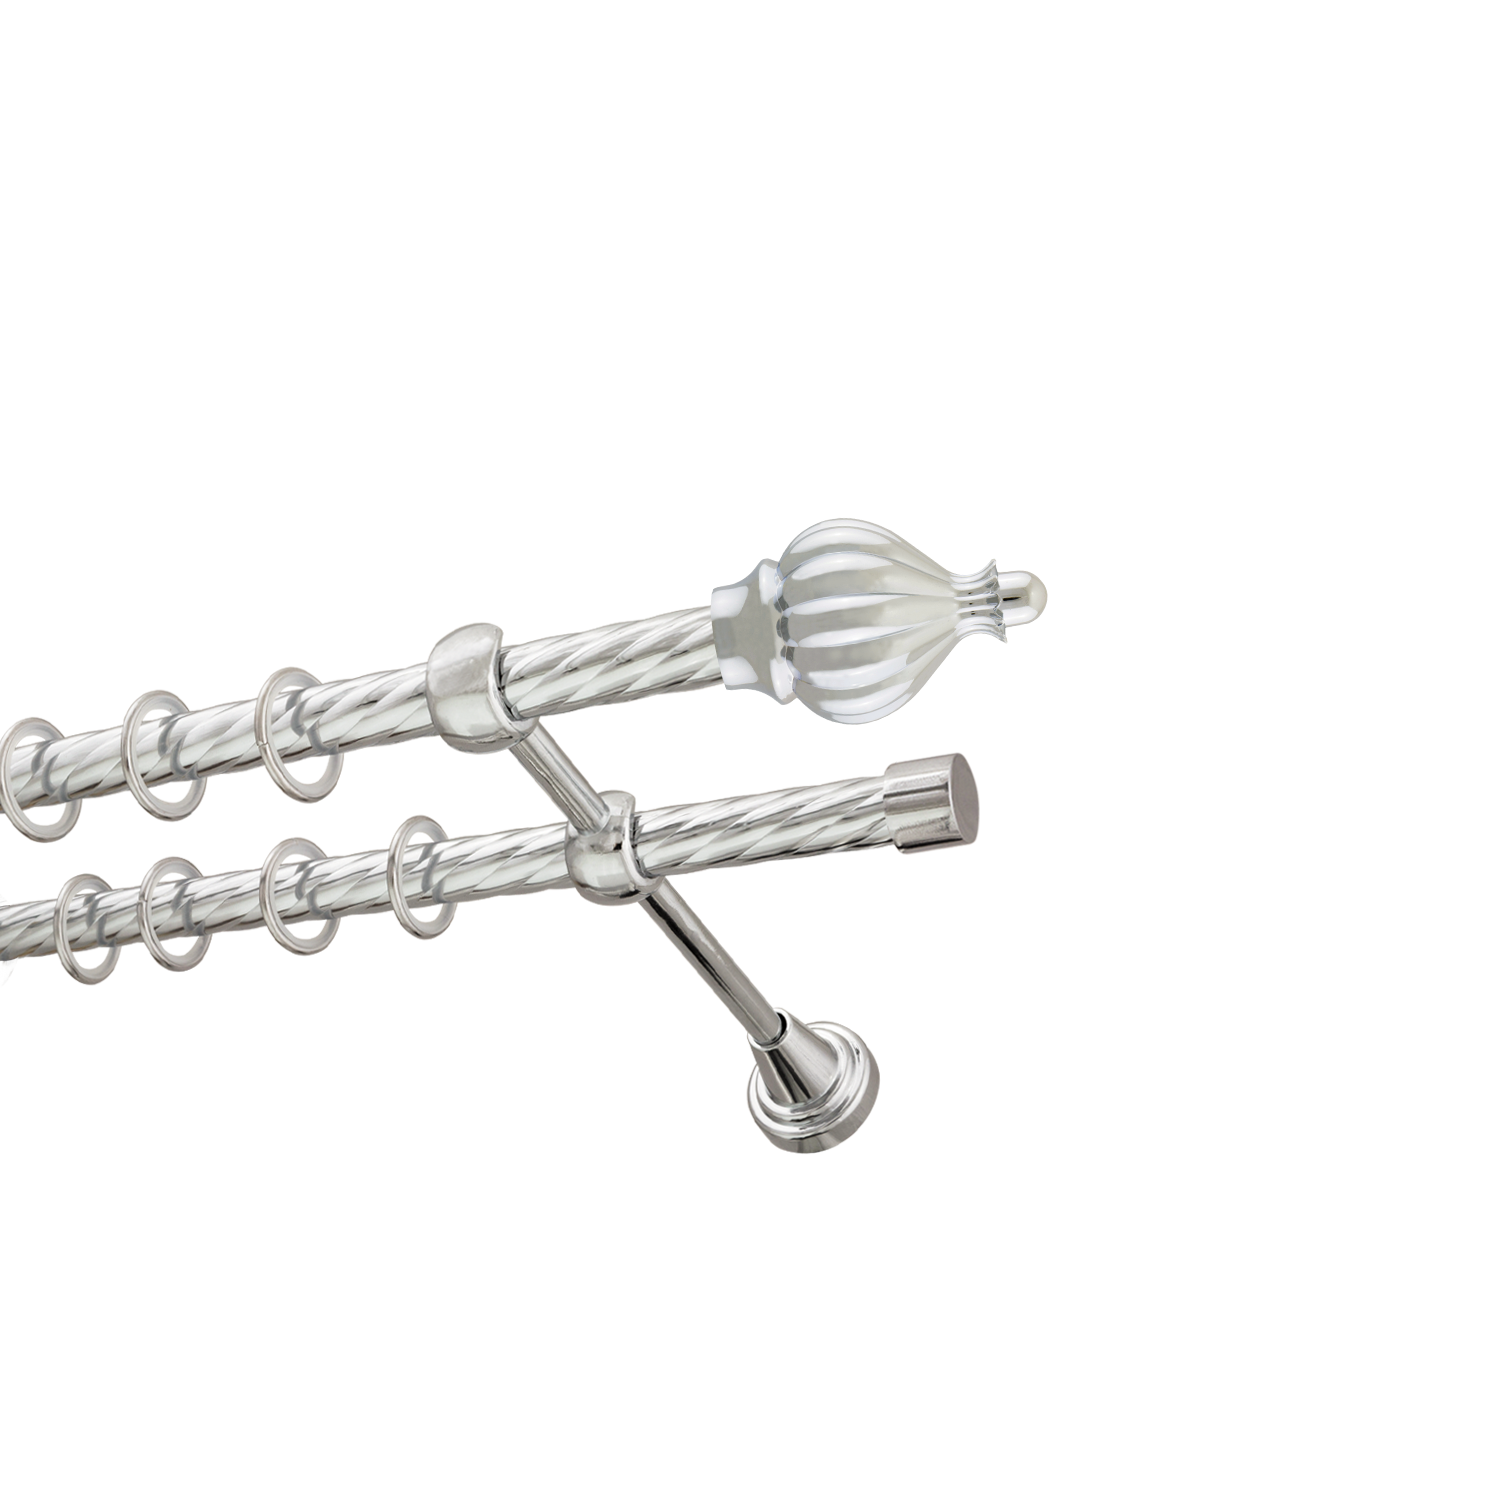 Металлический карниз для штор Афродита, двухрядный 16/16 мм, серебро, витая штанга, длина 160 см